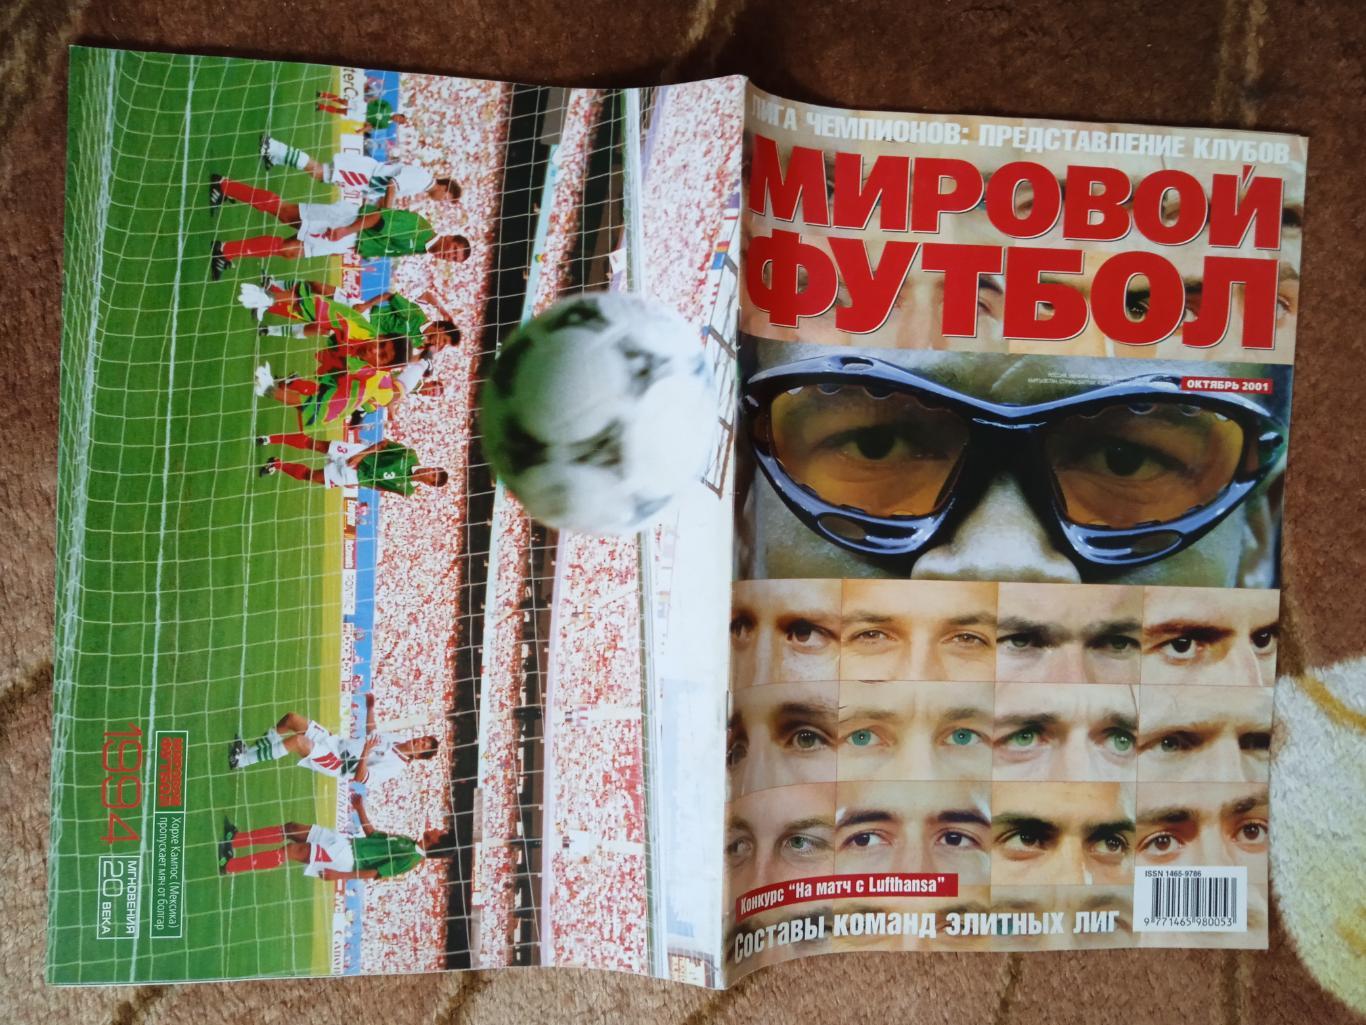 Журнал.Мировой футбол.Октябрь 2001 г. (Постеры).